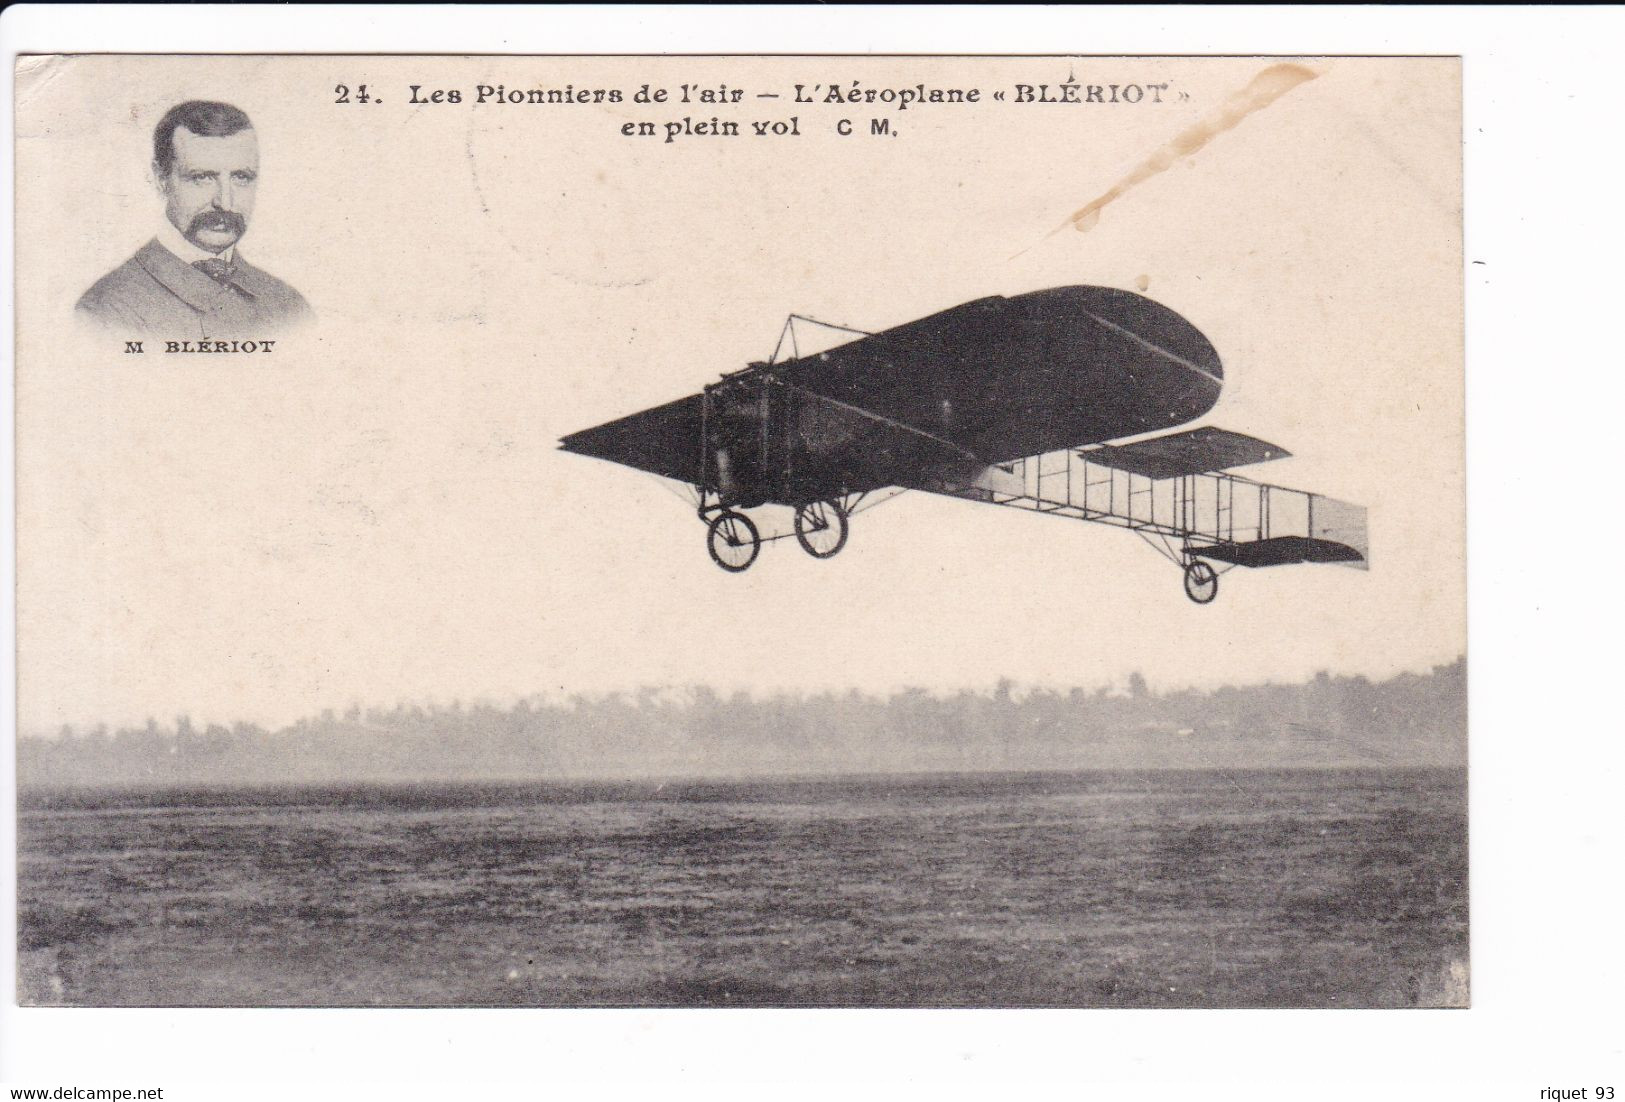 24 - Les Pionniers De L'air - L'Aéroplane "BLERIOT" - (Portrait De M. BLERIOT) - Airmen, Fliers